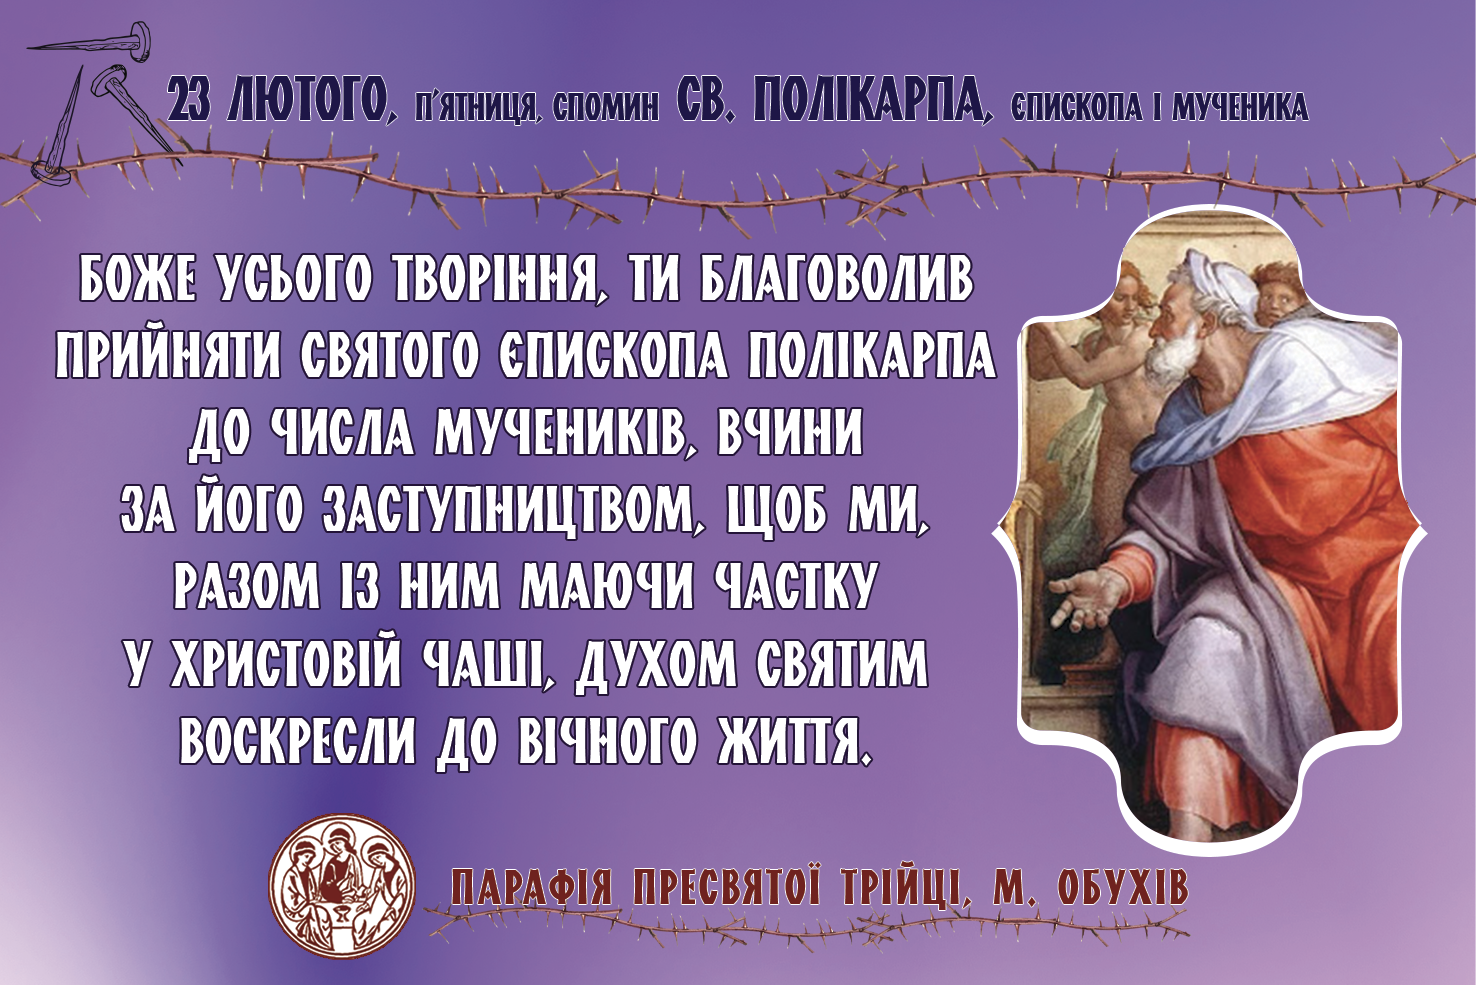 23 лютого, п’ятниця, спомин св. ПОЛІКАРПА, єпископа і мученика